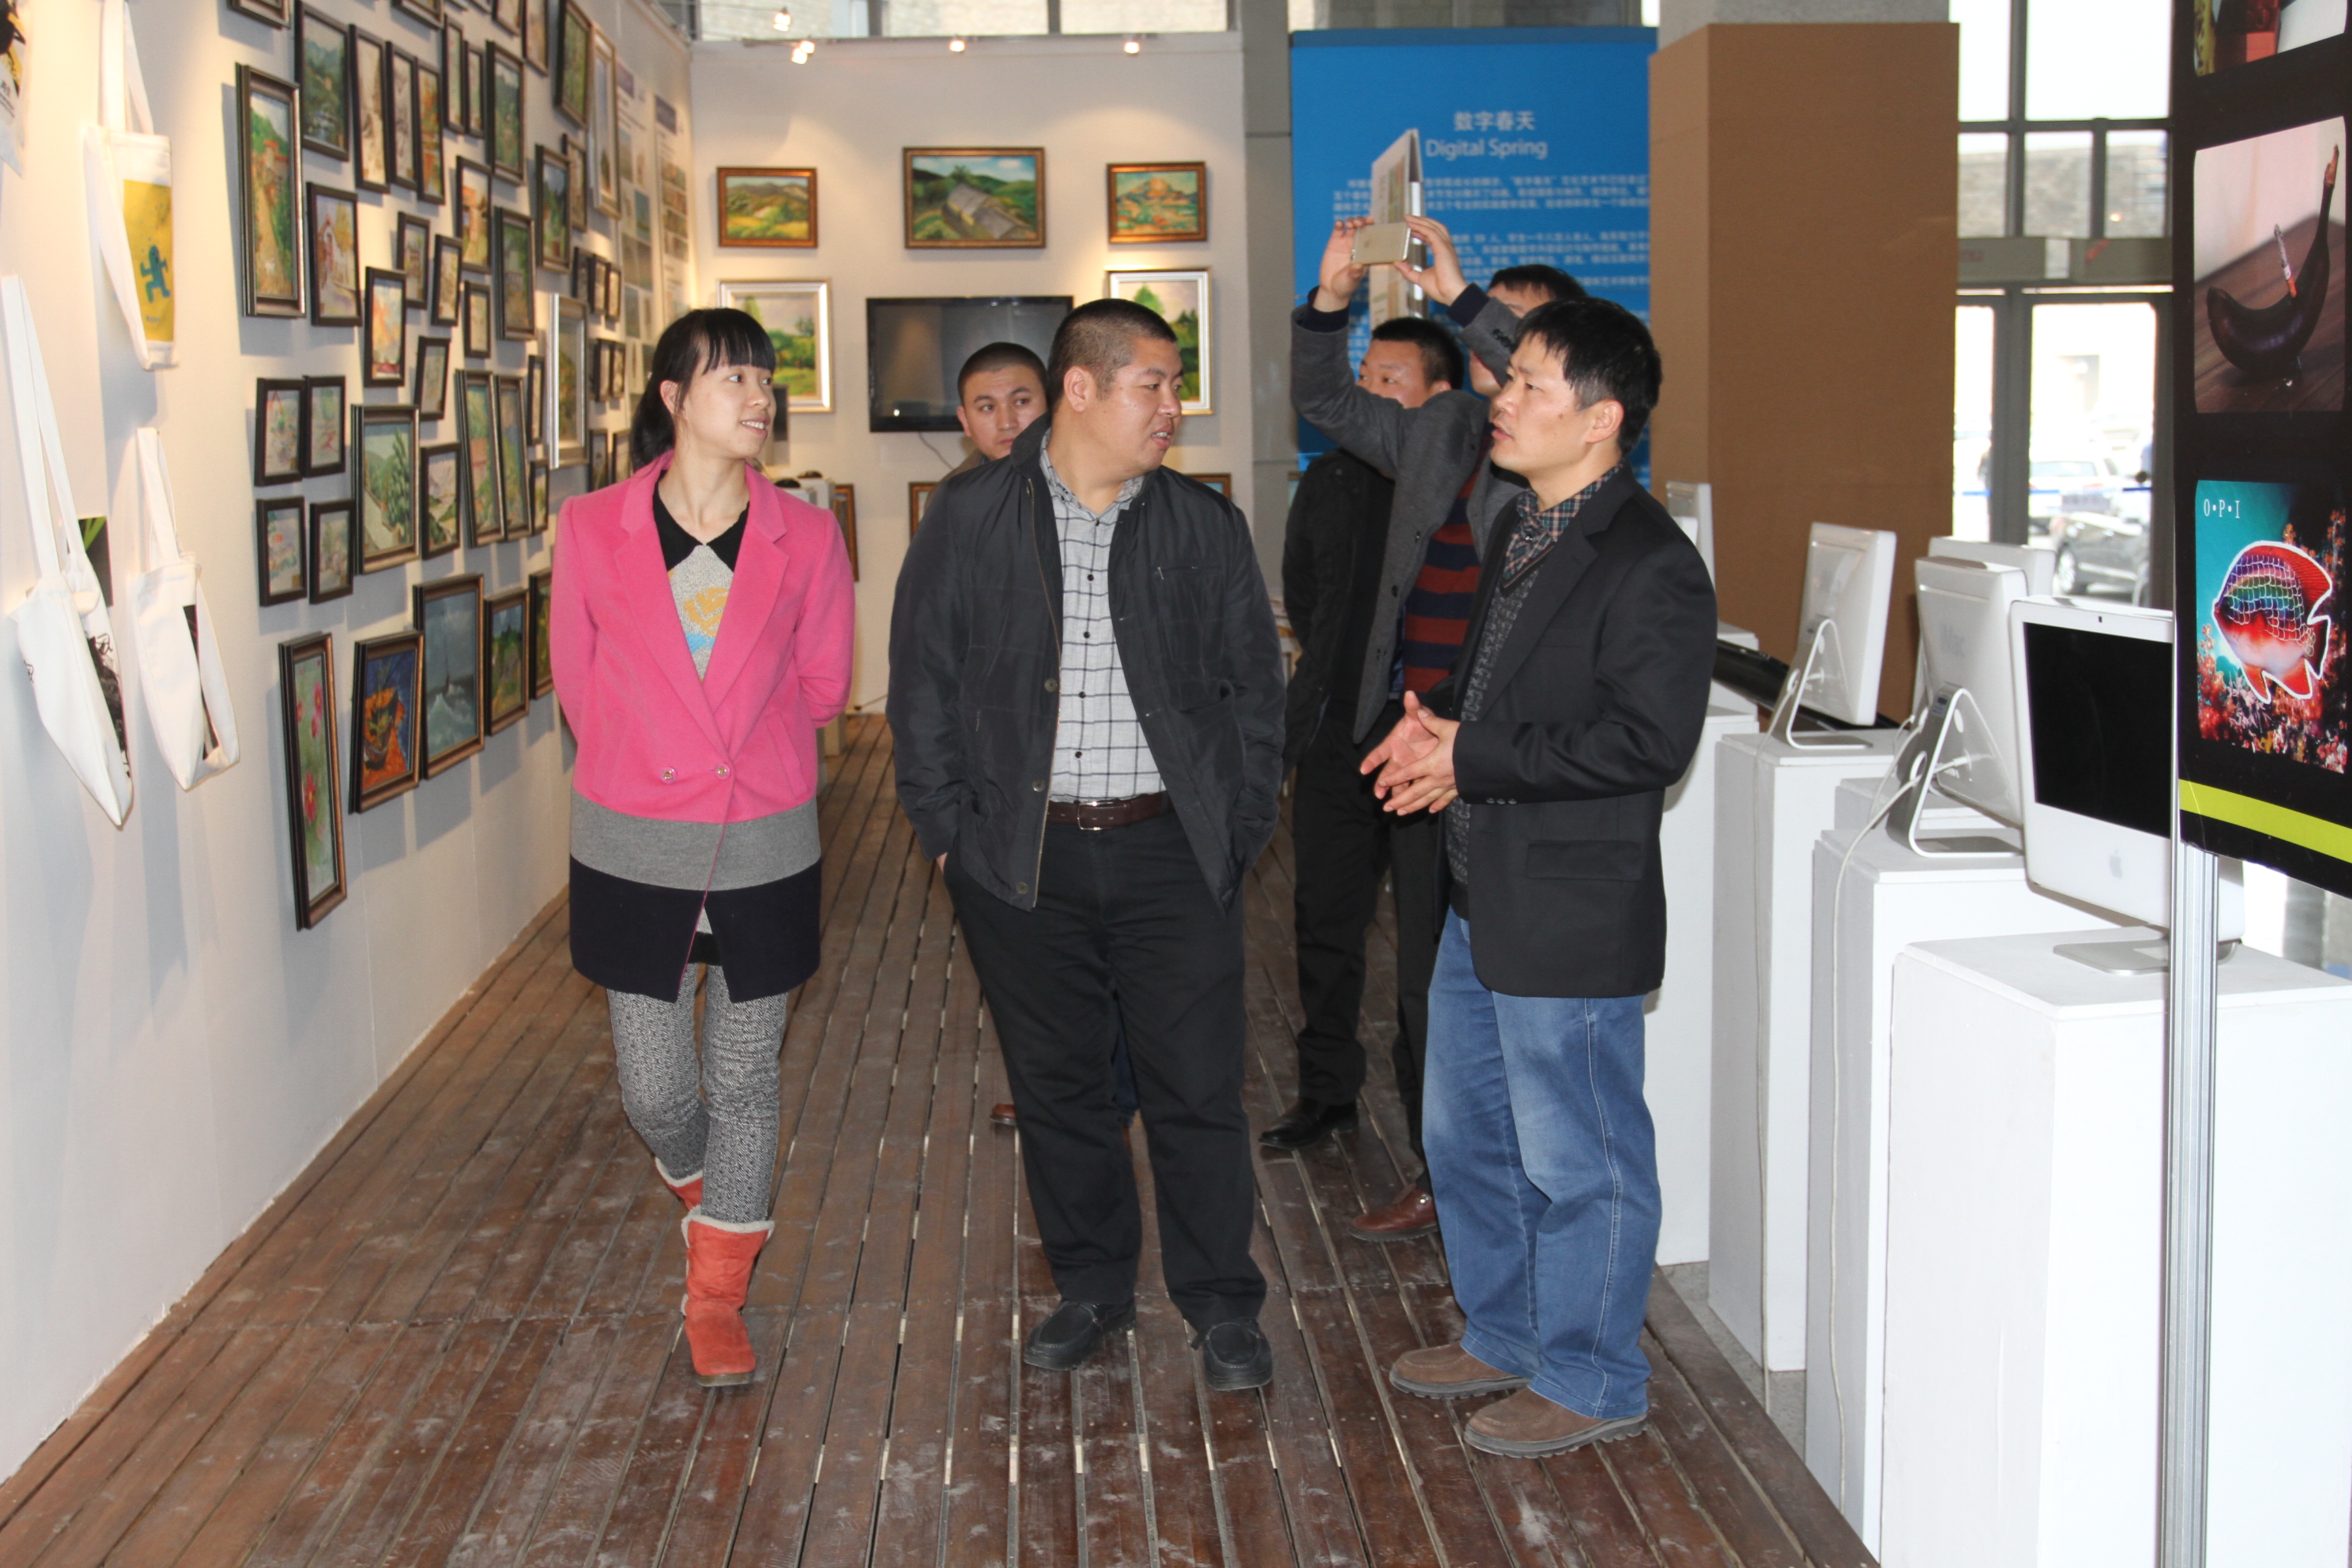 数字艺术系主任余庆军为来访嘉宾展示金色之秋作品展上的学生作品并与嘉宾亲切交流